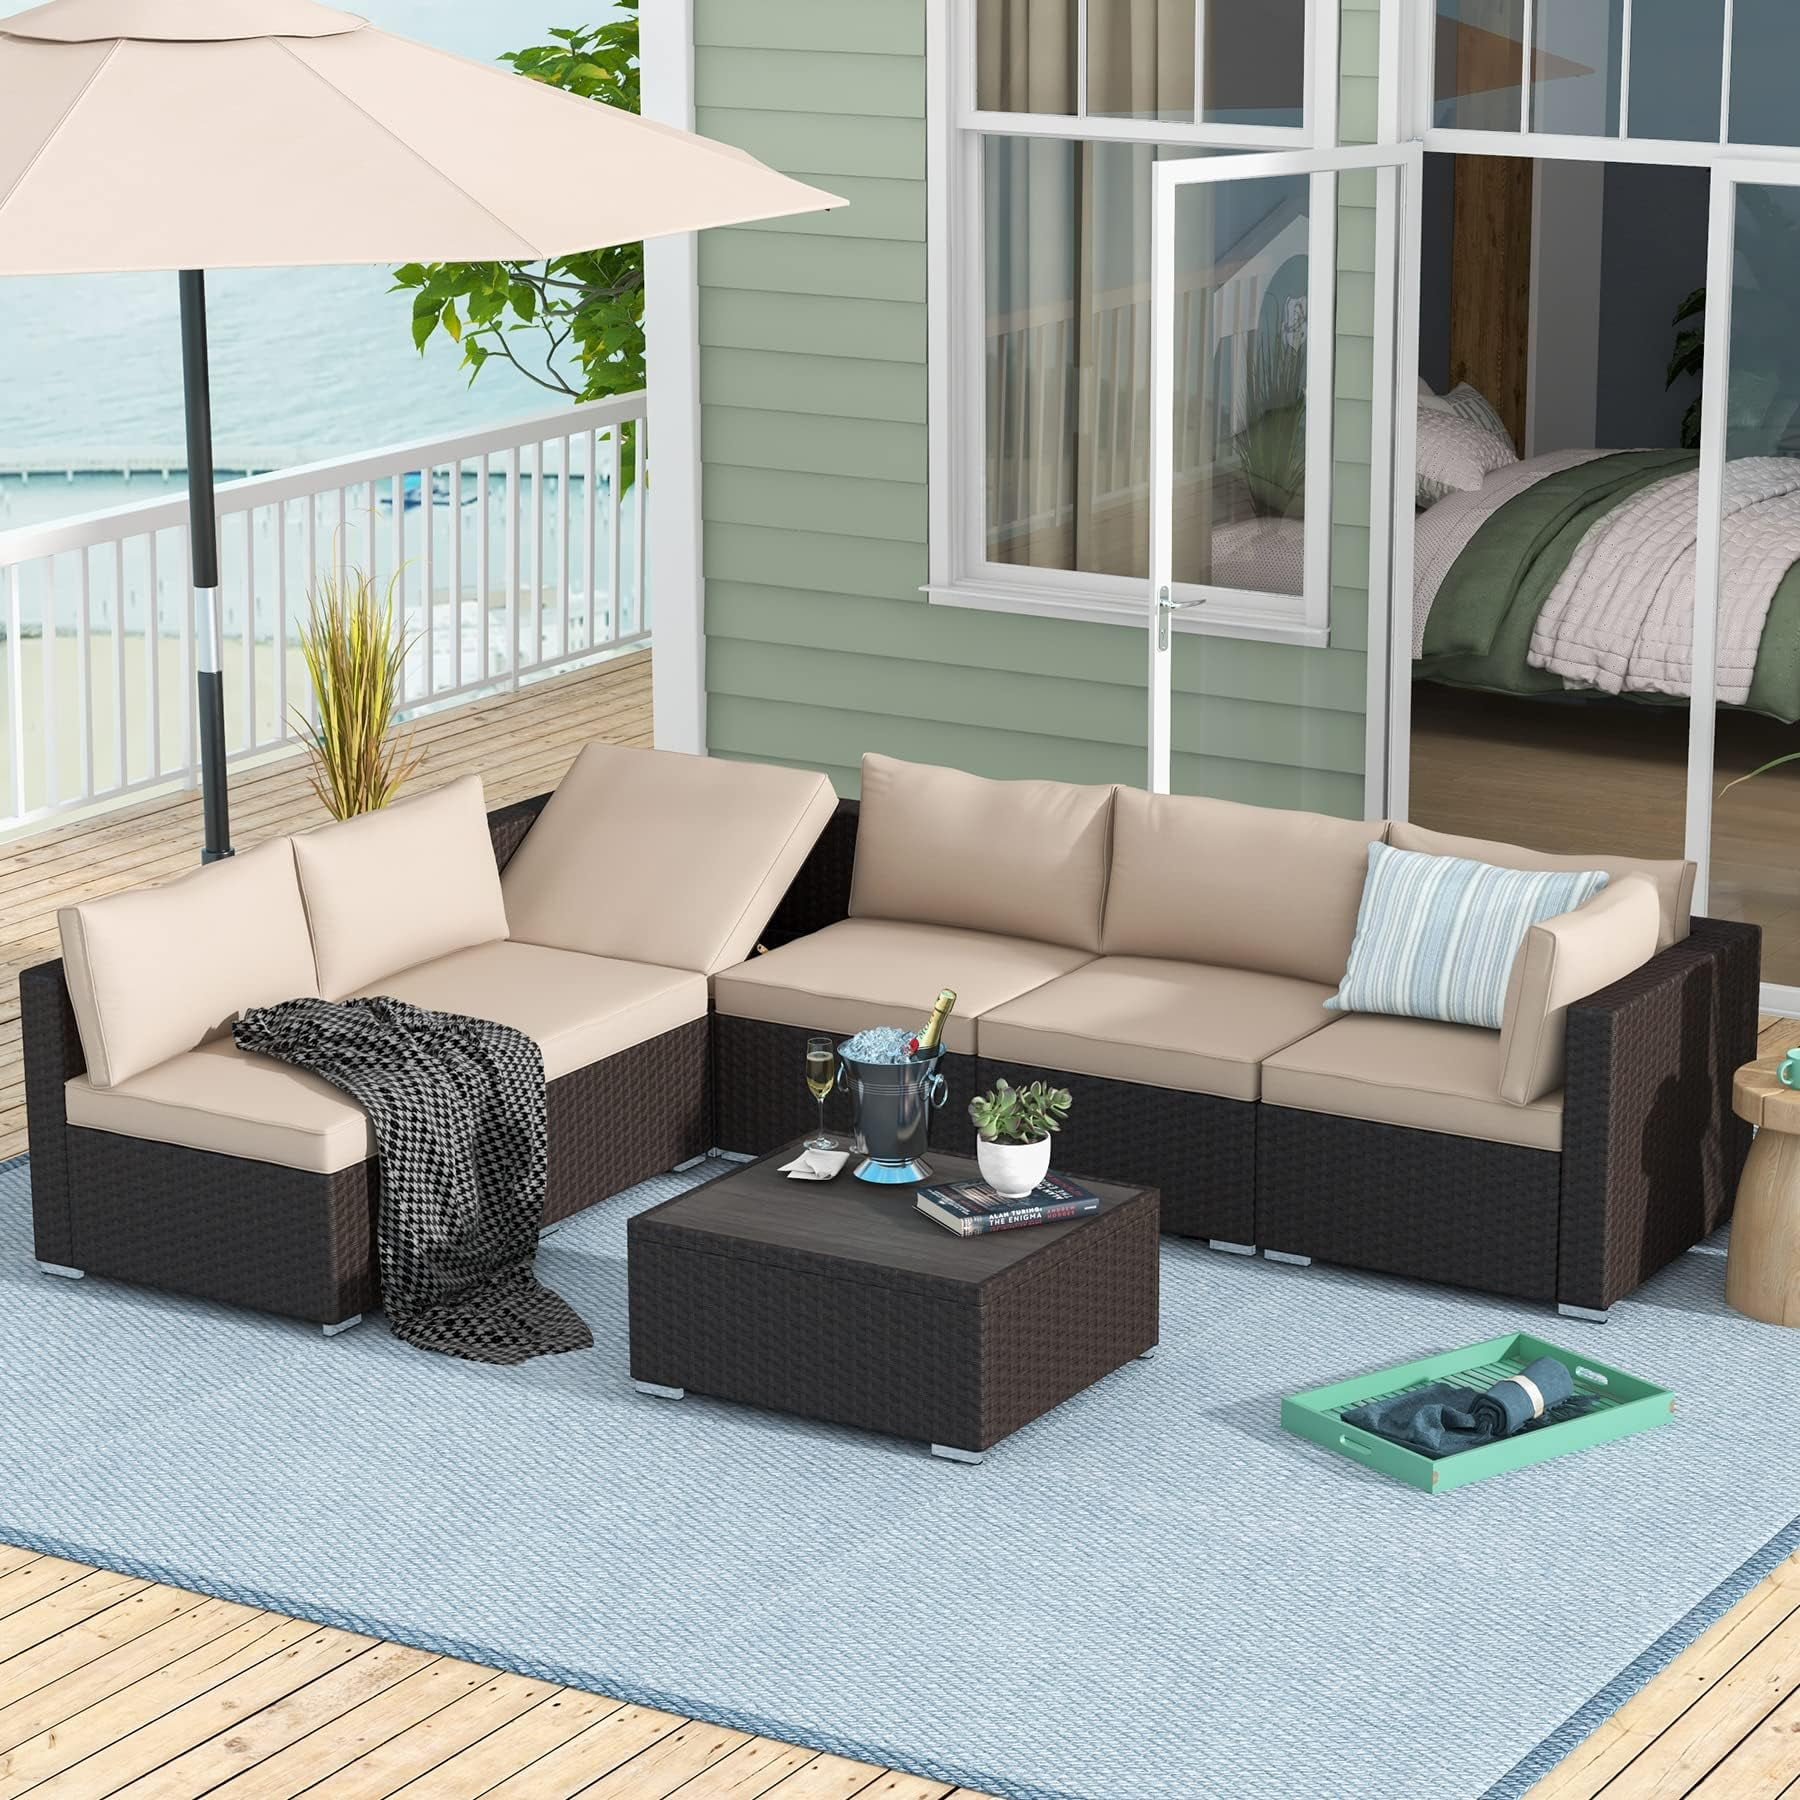  Muebles y Accesorios para Patio: Patio, Césped y Jardín:  Umbrellas & Shade, Patio Seating y más